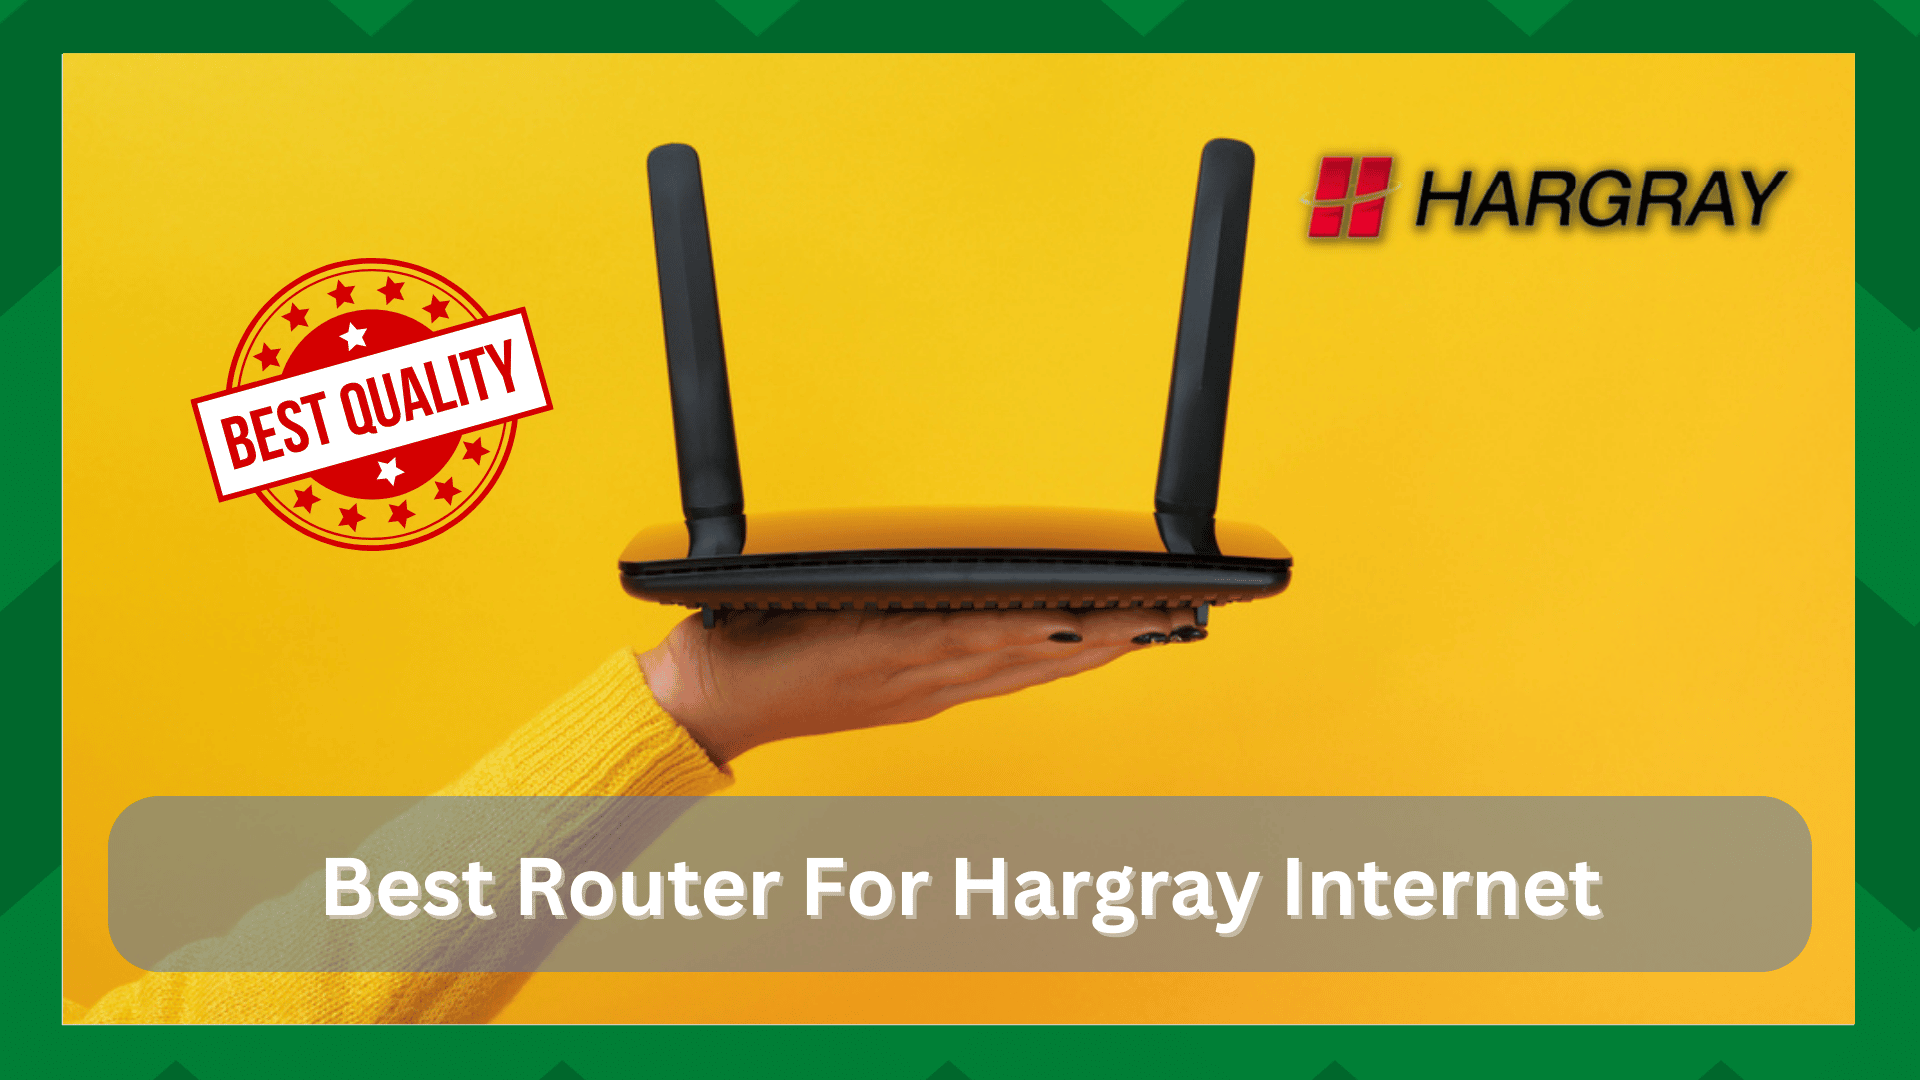 7 Най-добър маршрутизатор за интернет на Hargray (препоръчано)